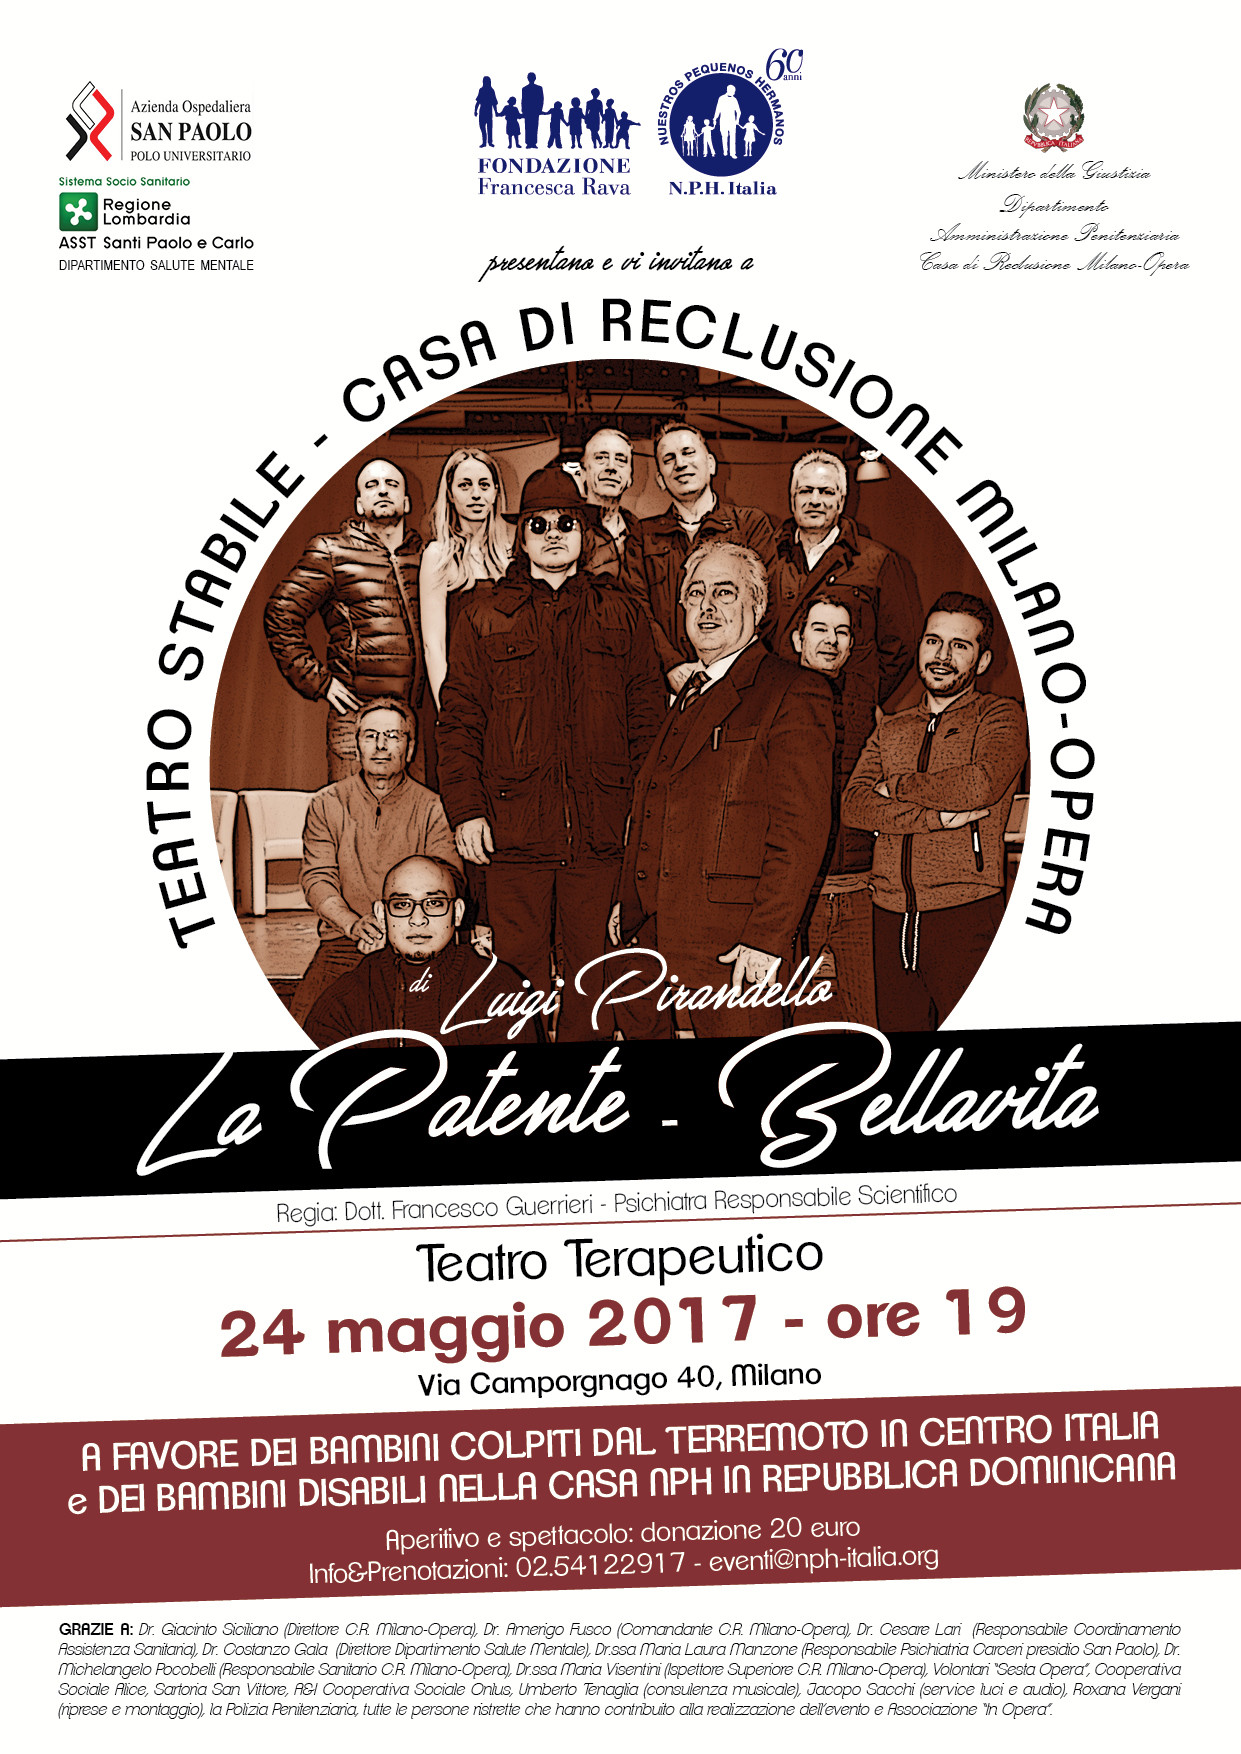 24 maggio, Casa di reclusione di Opera (MI), Spettacolo teatrale a favore dei bambini del Centro Italia e della Repubblica dominicana.